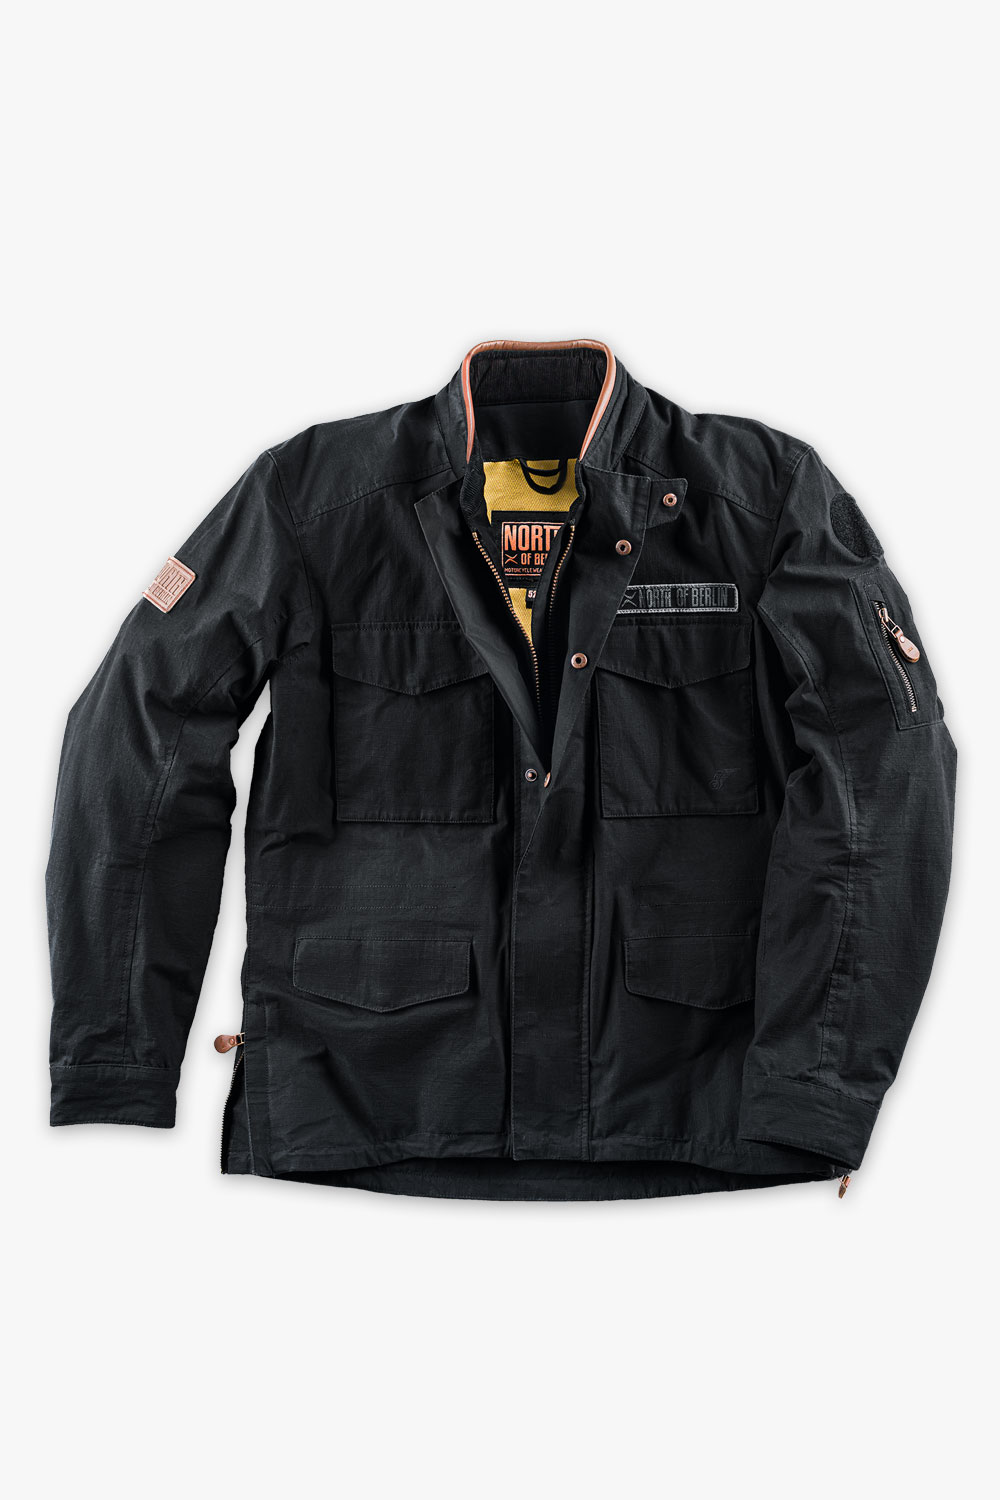 mens moto65 suit black jacket front